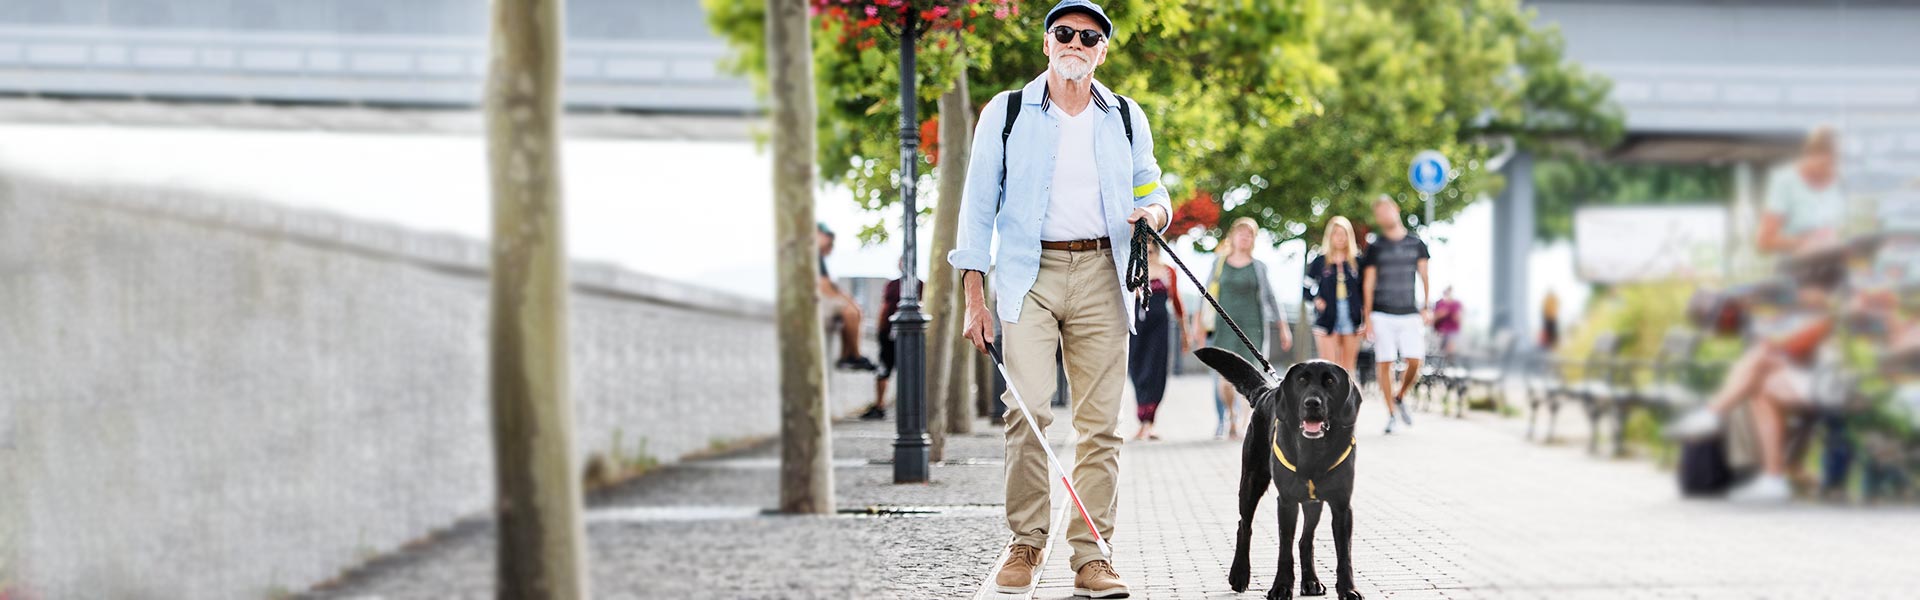 Lörrach & die Regio - touristische Vielfalt - Blinder mit Blindenhund